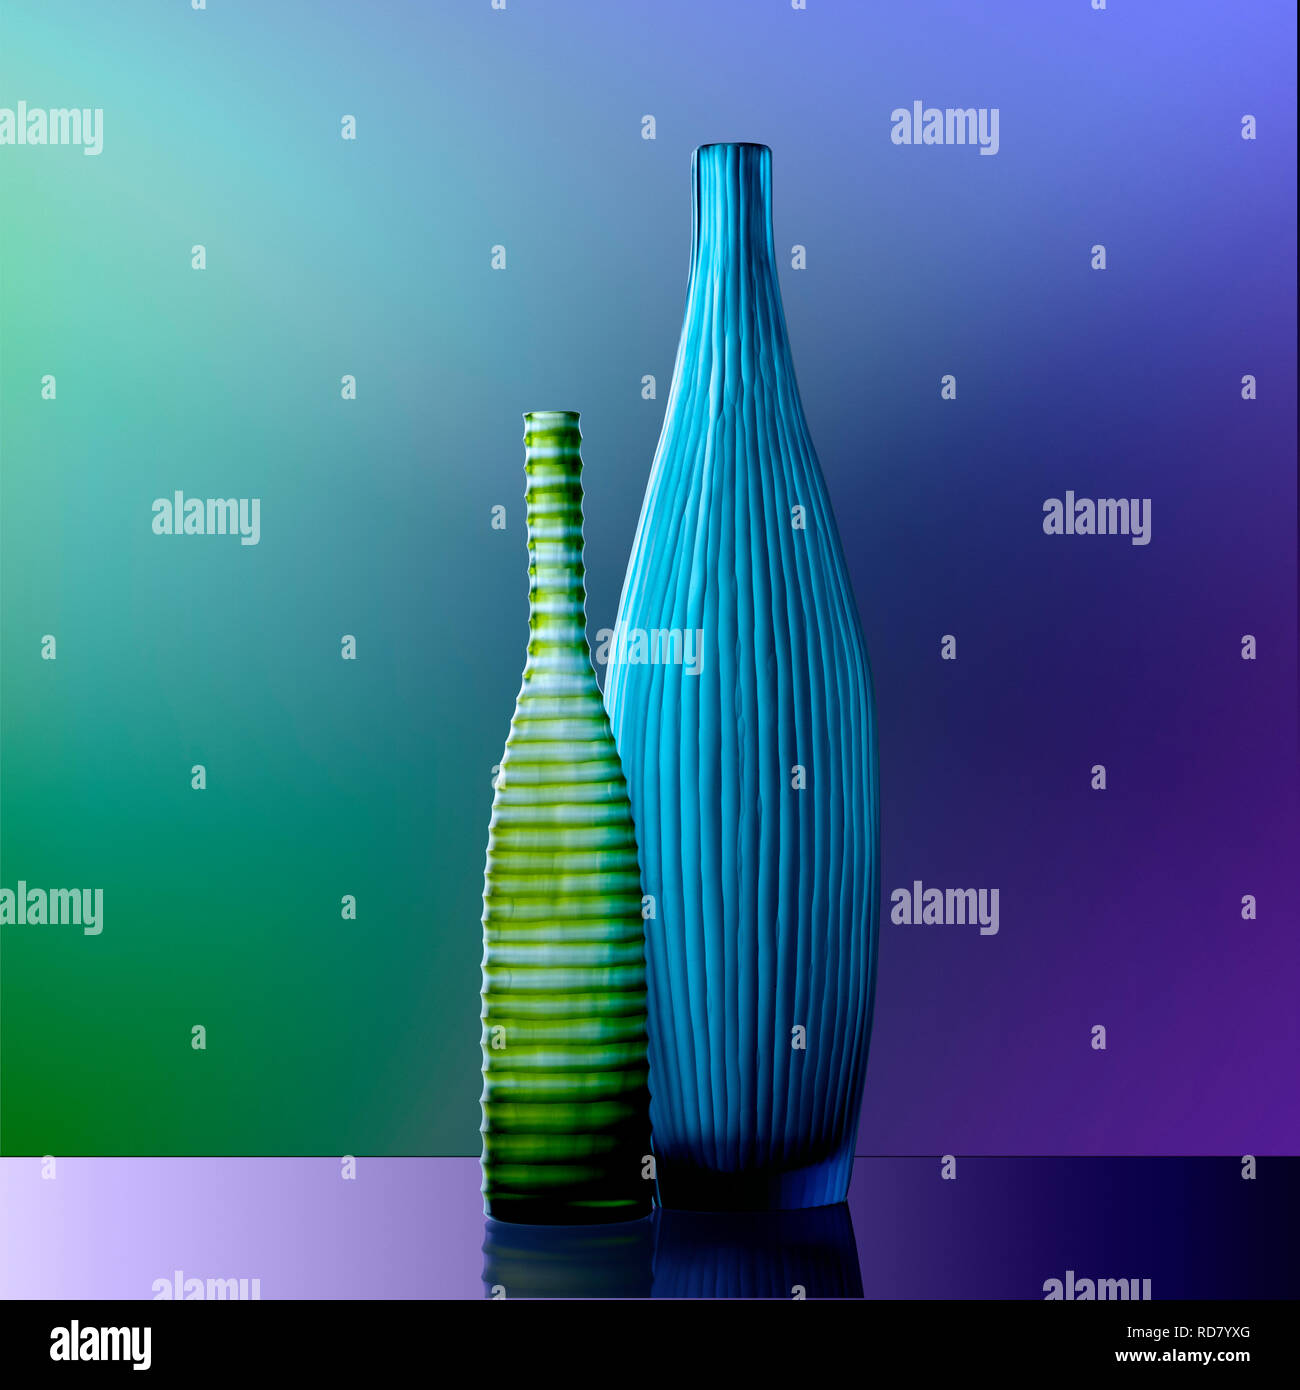 Botellas de vidrio verde y azul, Foto de estudio Foto de stock